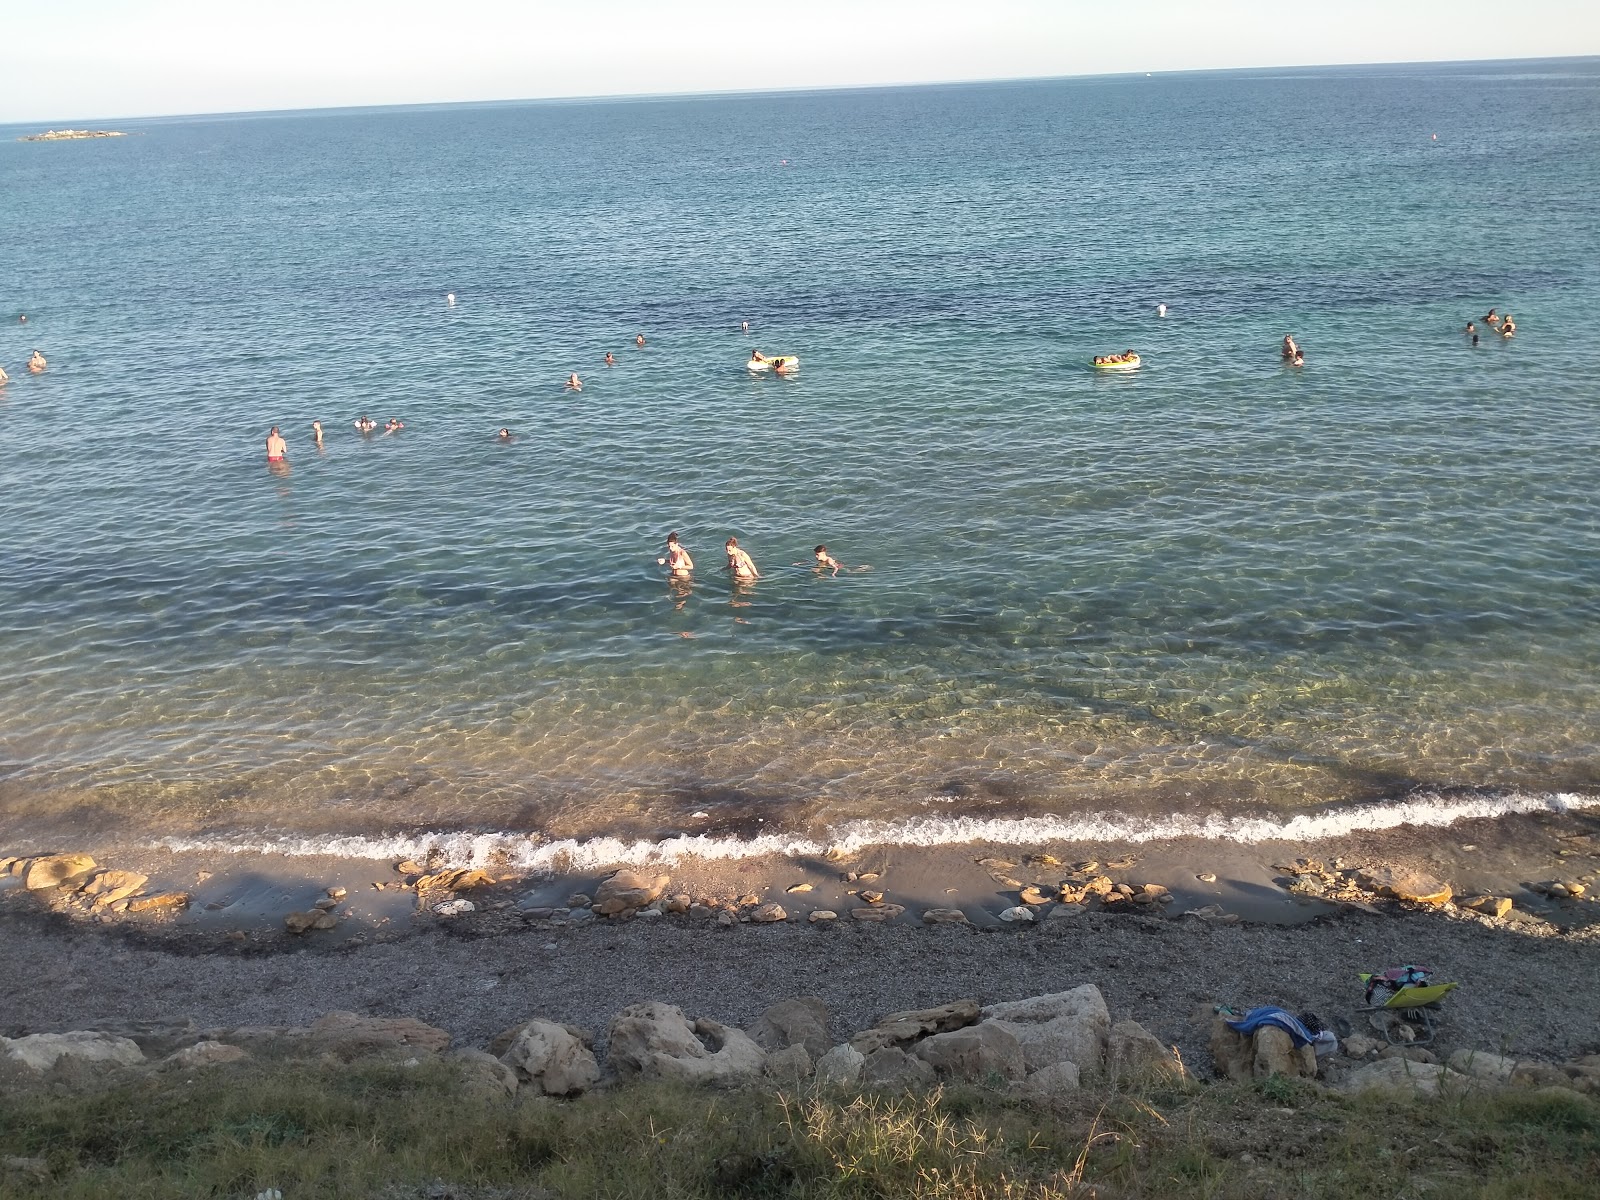 Spiaggia Fanusa'in fotoğrafı küçük koy ile birlikte